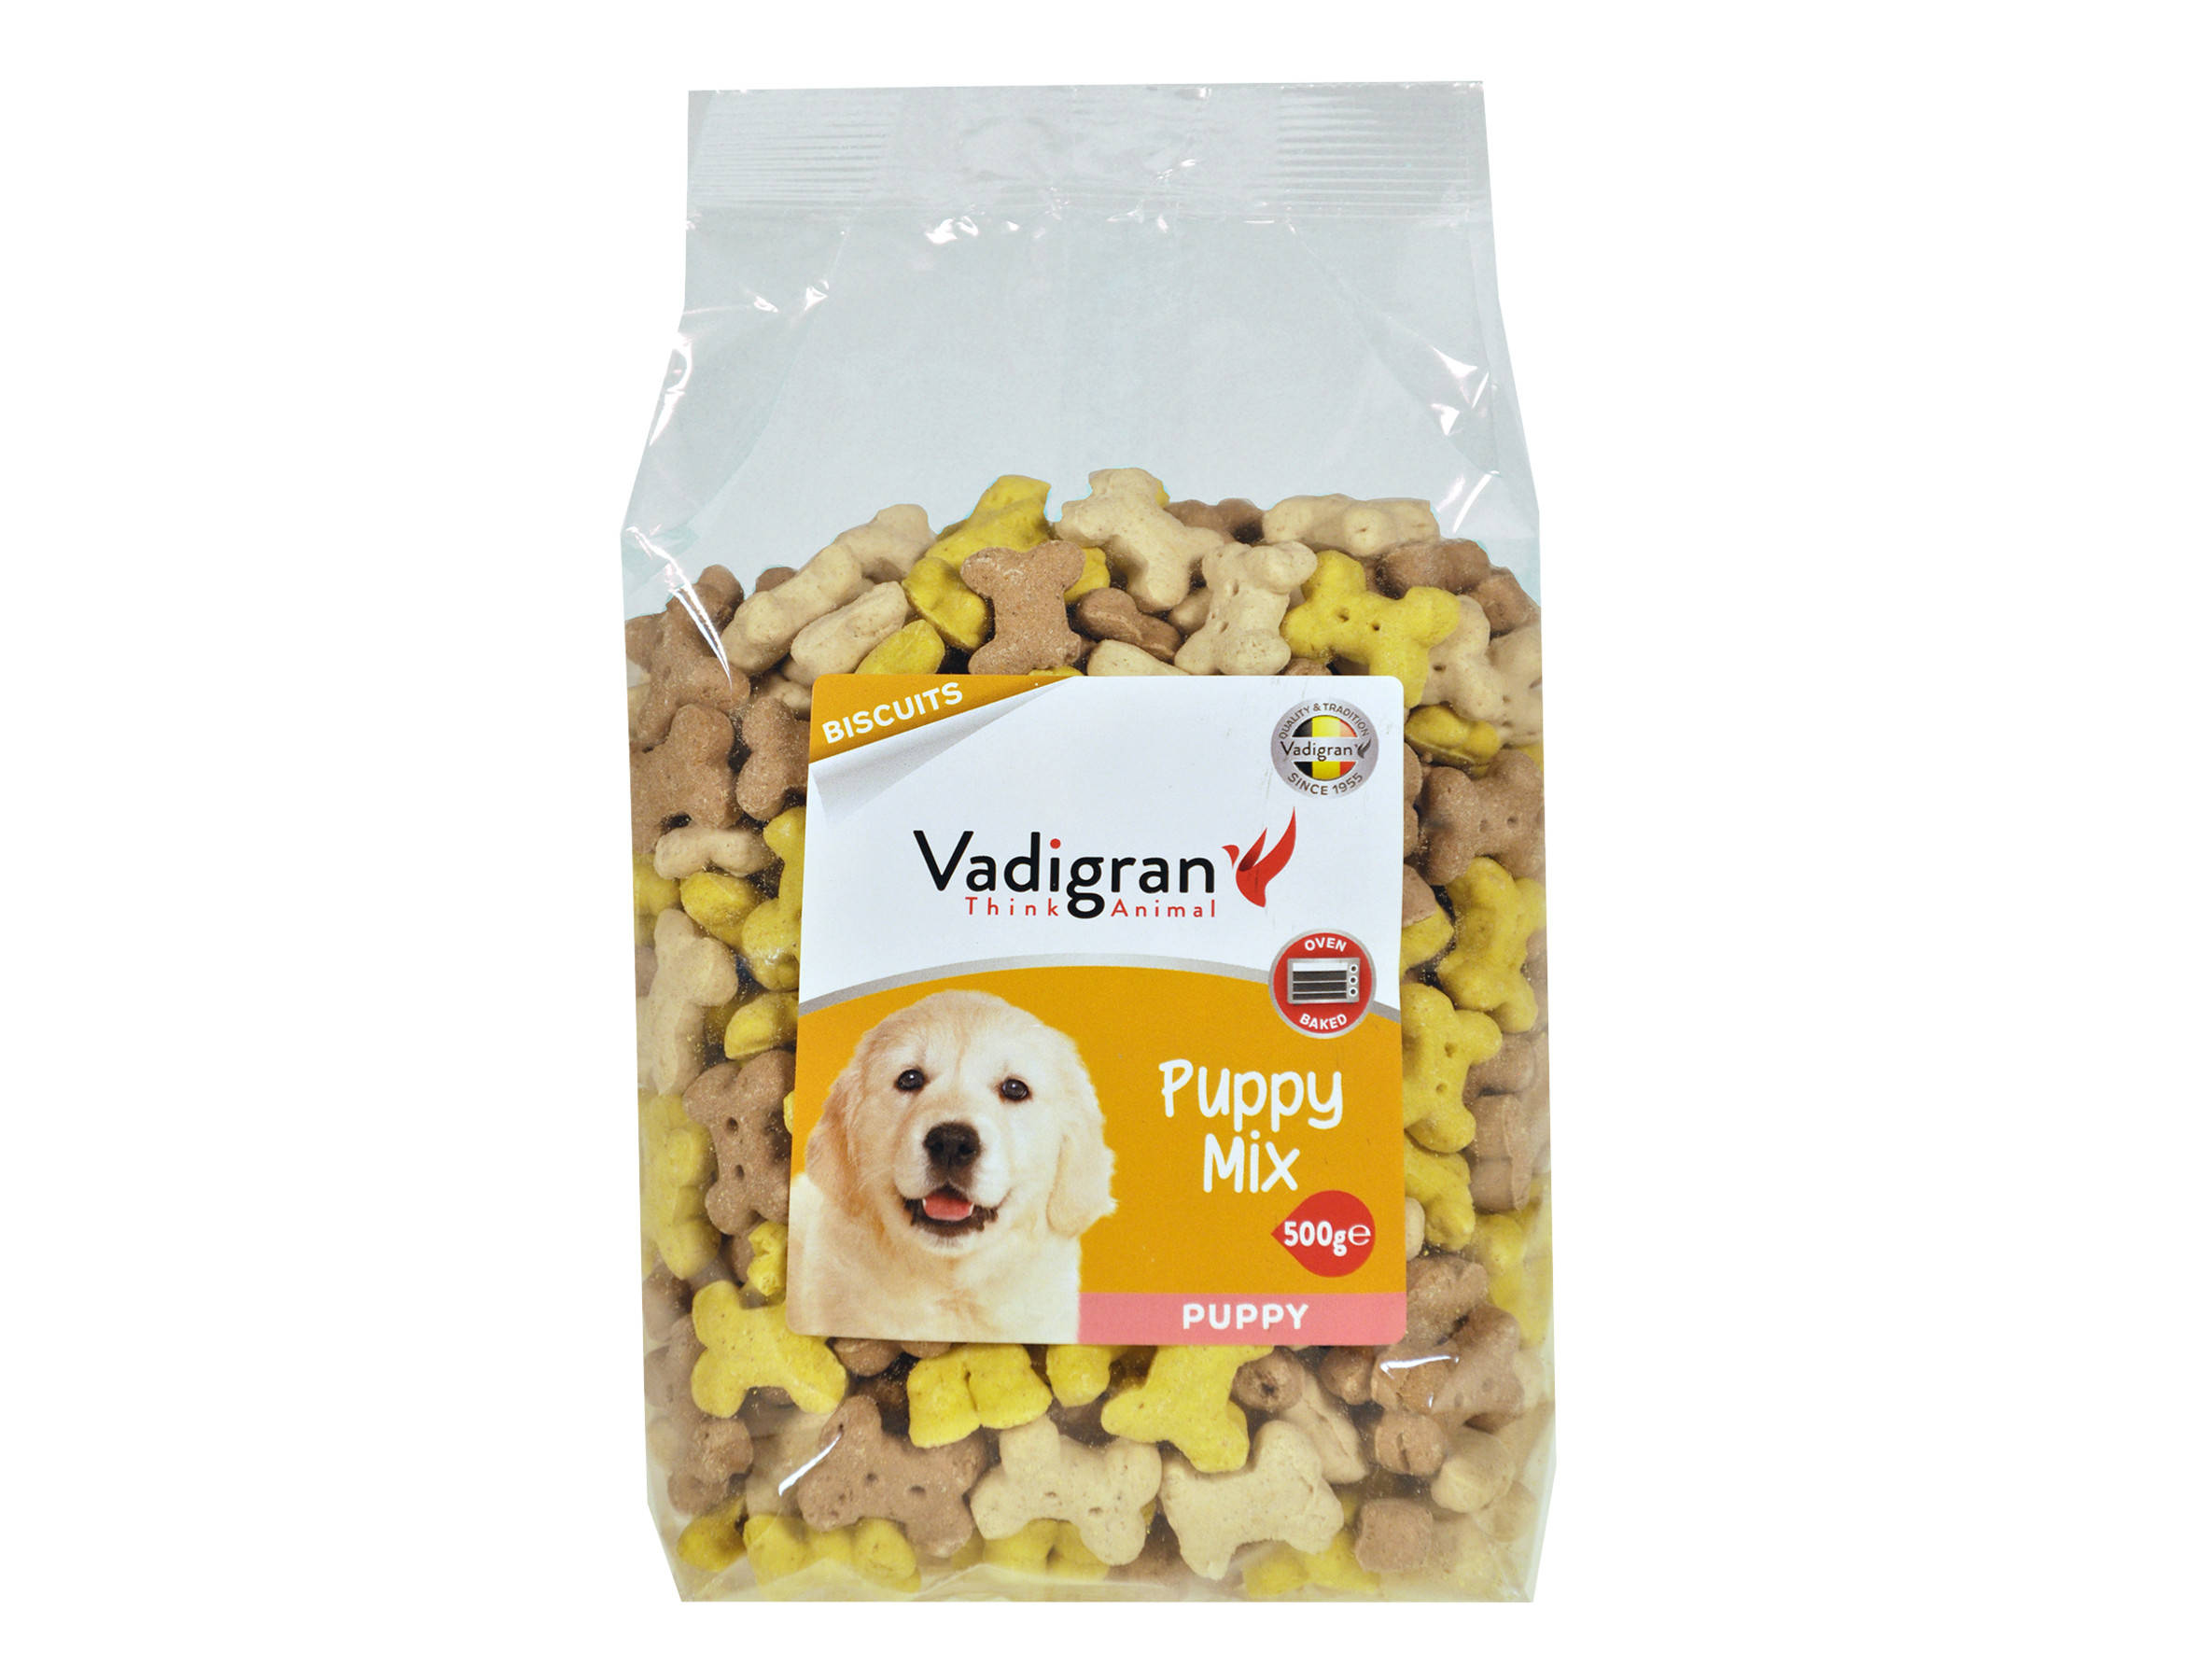 Vadigran Snack dog Biscuits Puppy Mix 500g